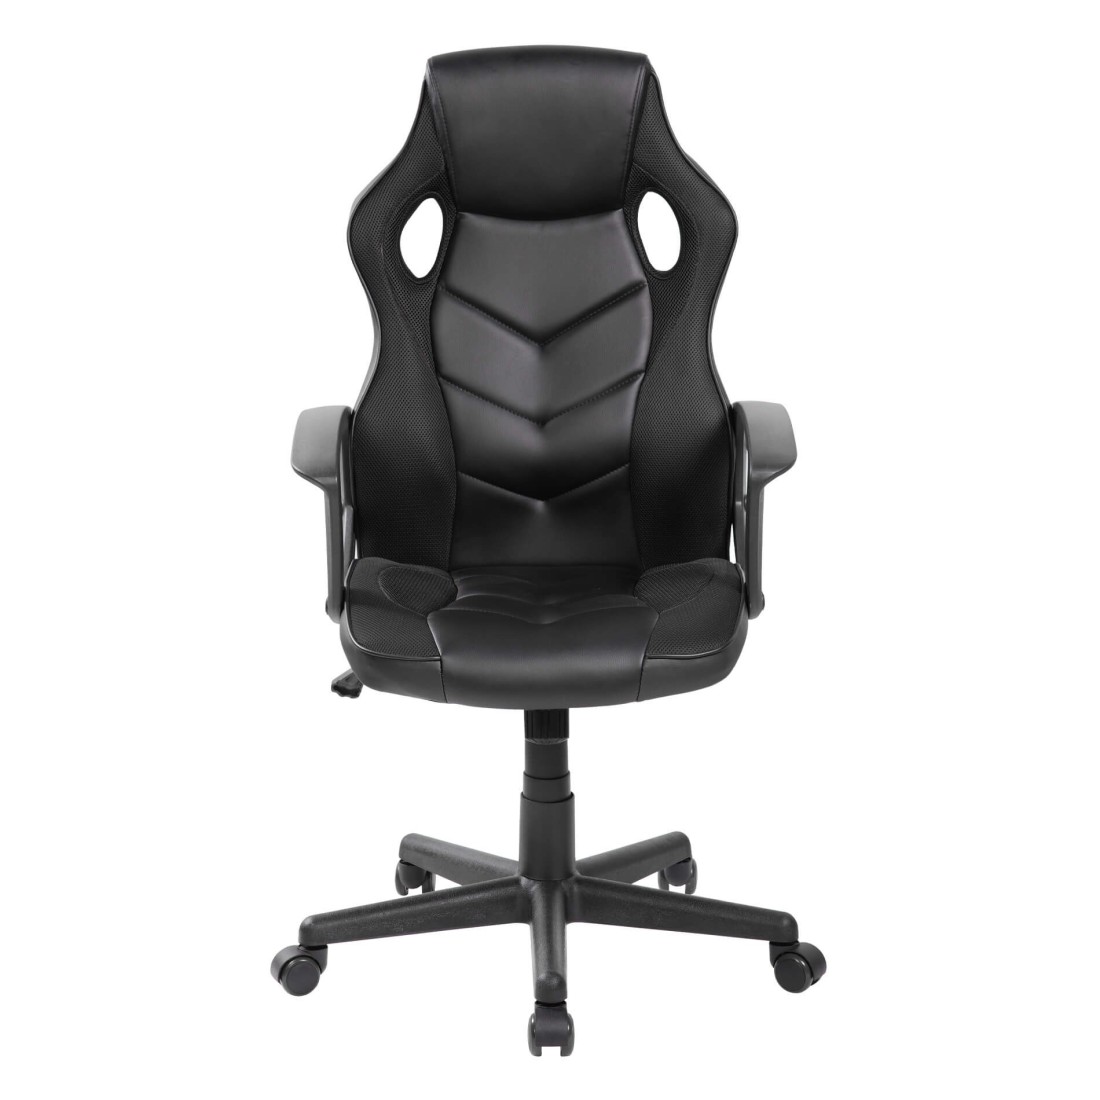 https://www.mobilirebecca.it/25868-thickbox_default_square/chaise-gaming-ergonomique-en-cuir-synthetique-noir.jpg